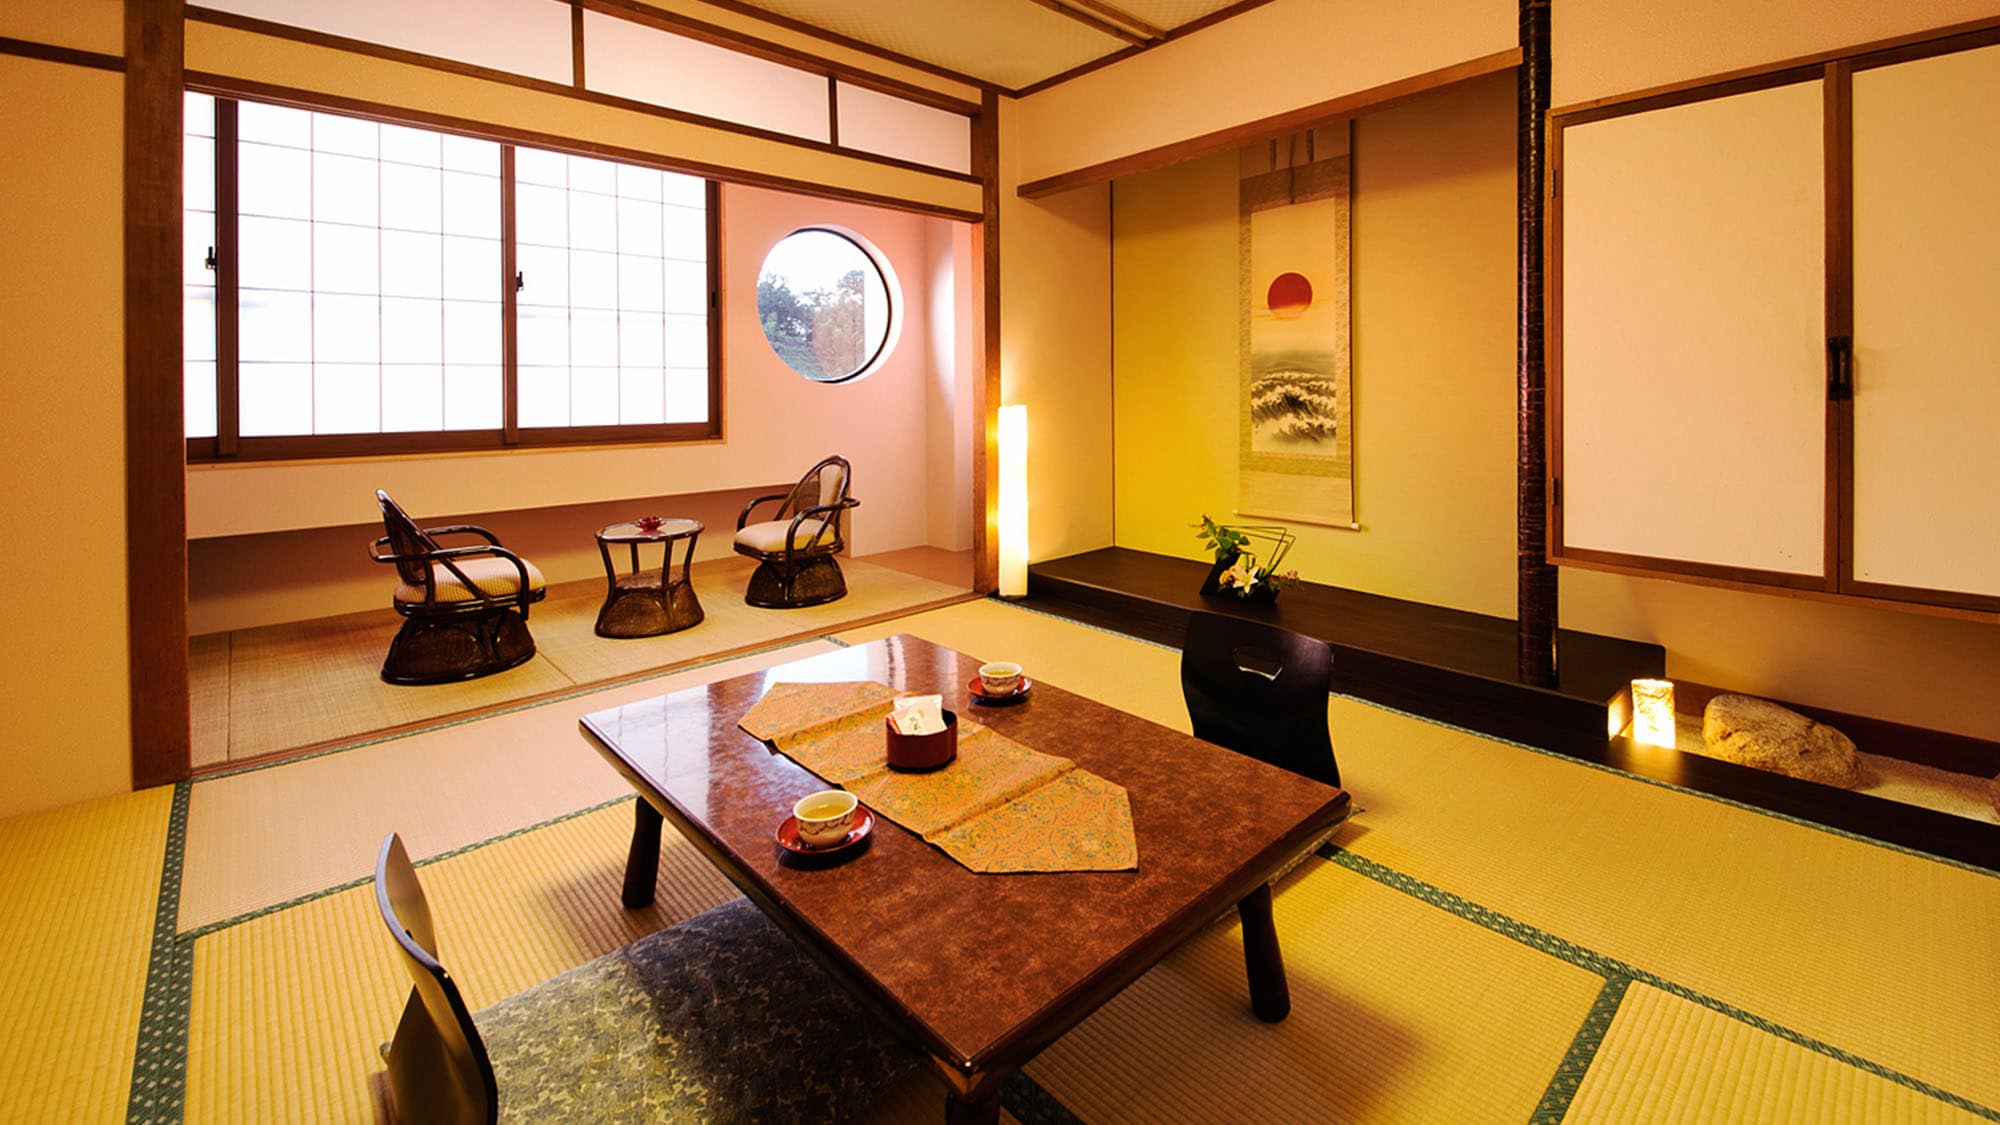 ■ ห้องสไตล์ญี่ปุ่น 10 เสื่อทาทามิ ■ อันดับ 1 ยอดนิยม! !! พื้นเสื่อทาทามิมีความสะดวกสบายและคุณสามารถยืดร่างกายได้อย่างเต็มที่และพักผ่อน